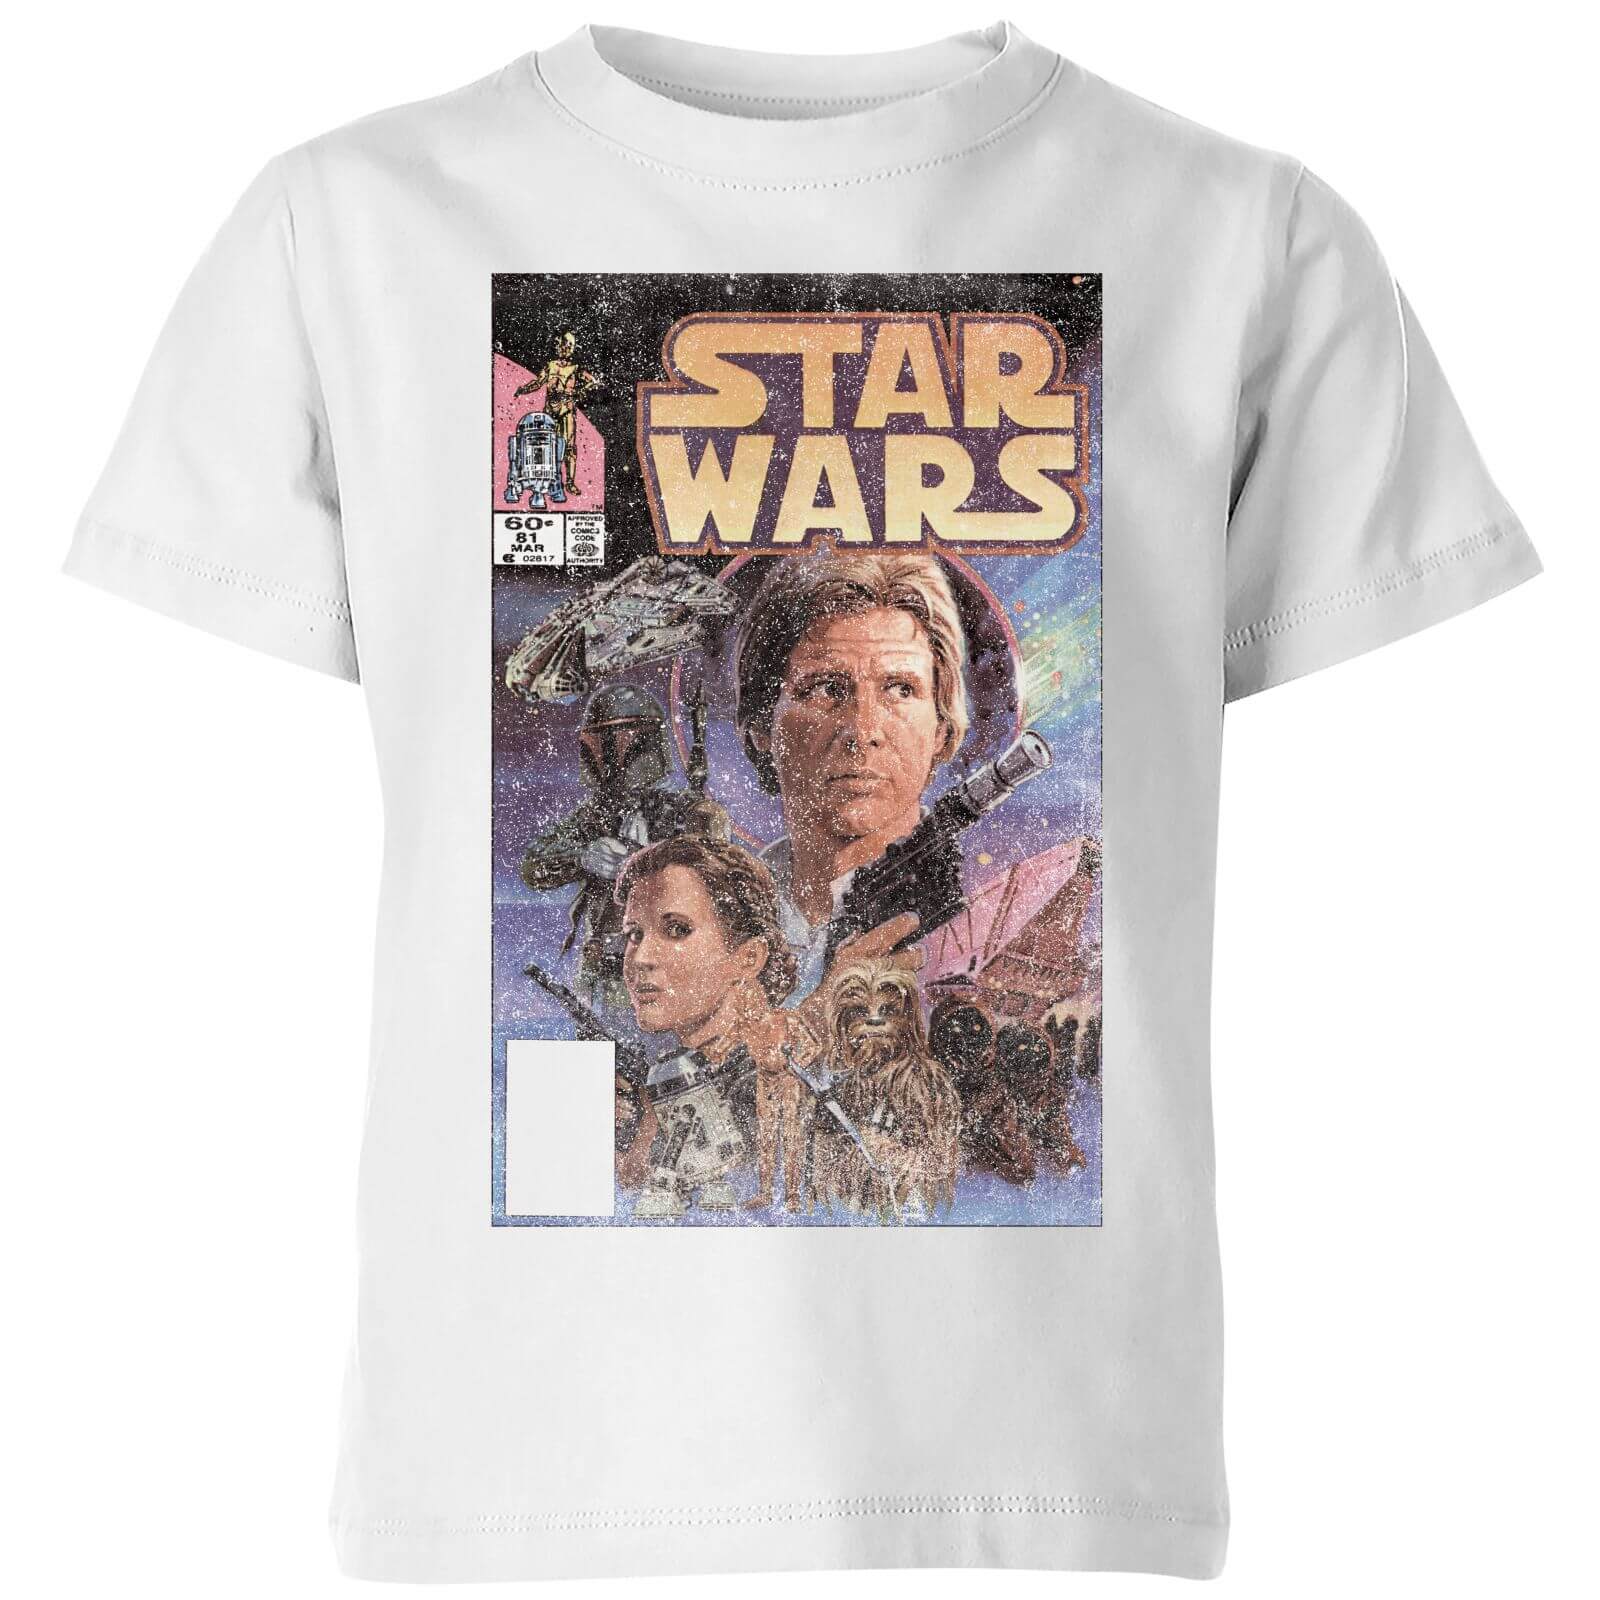 classic star wars t shirt